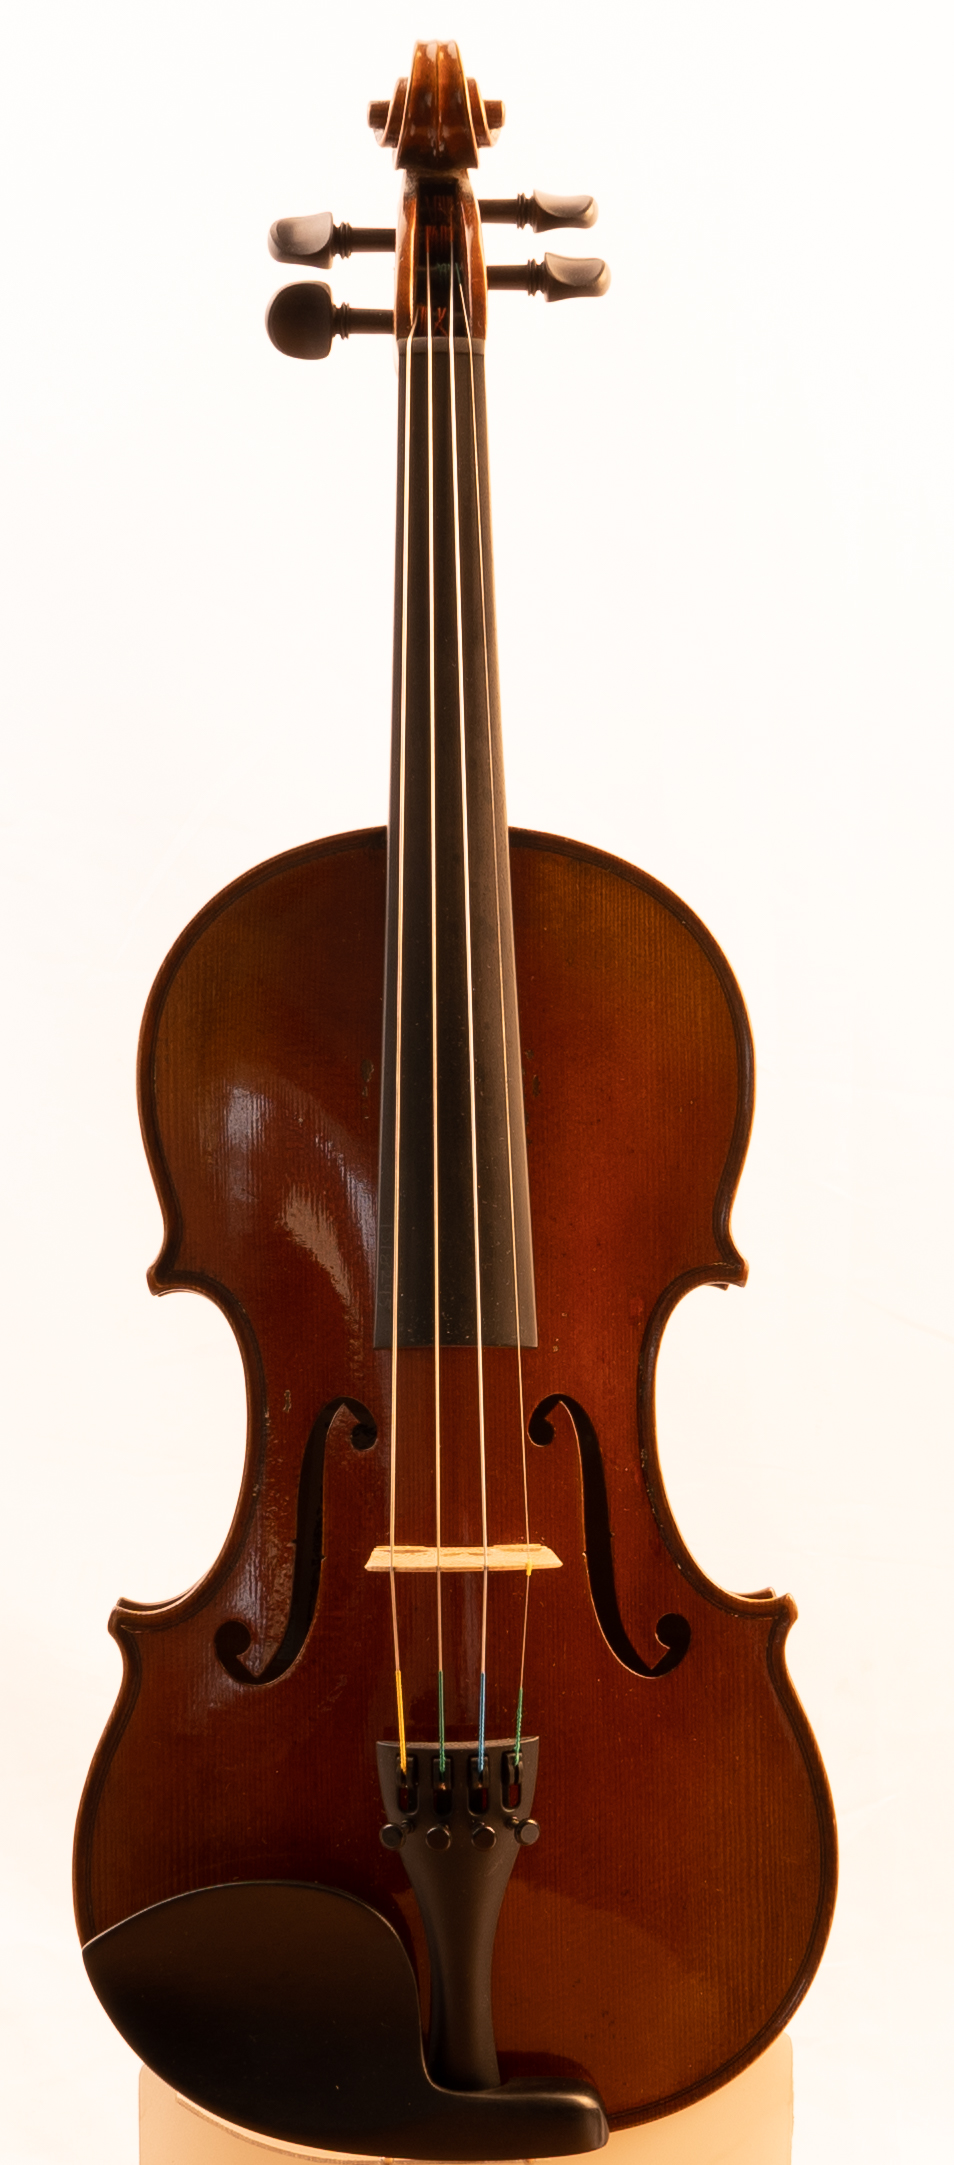 Pierre Marcel Violin VI Del Gesu 1742